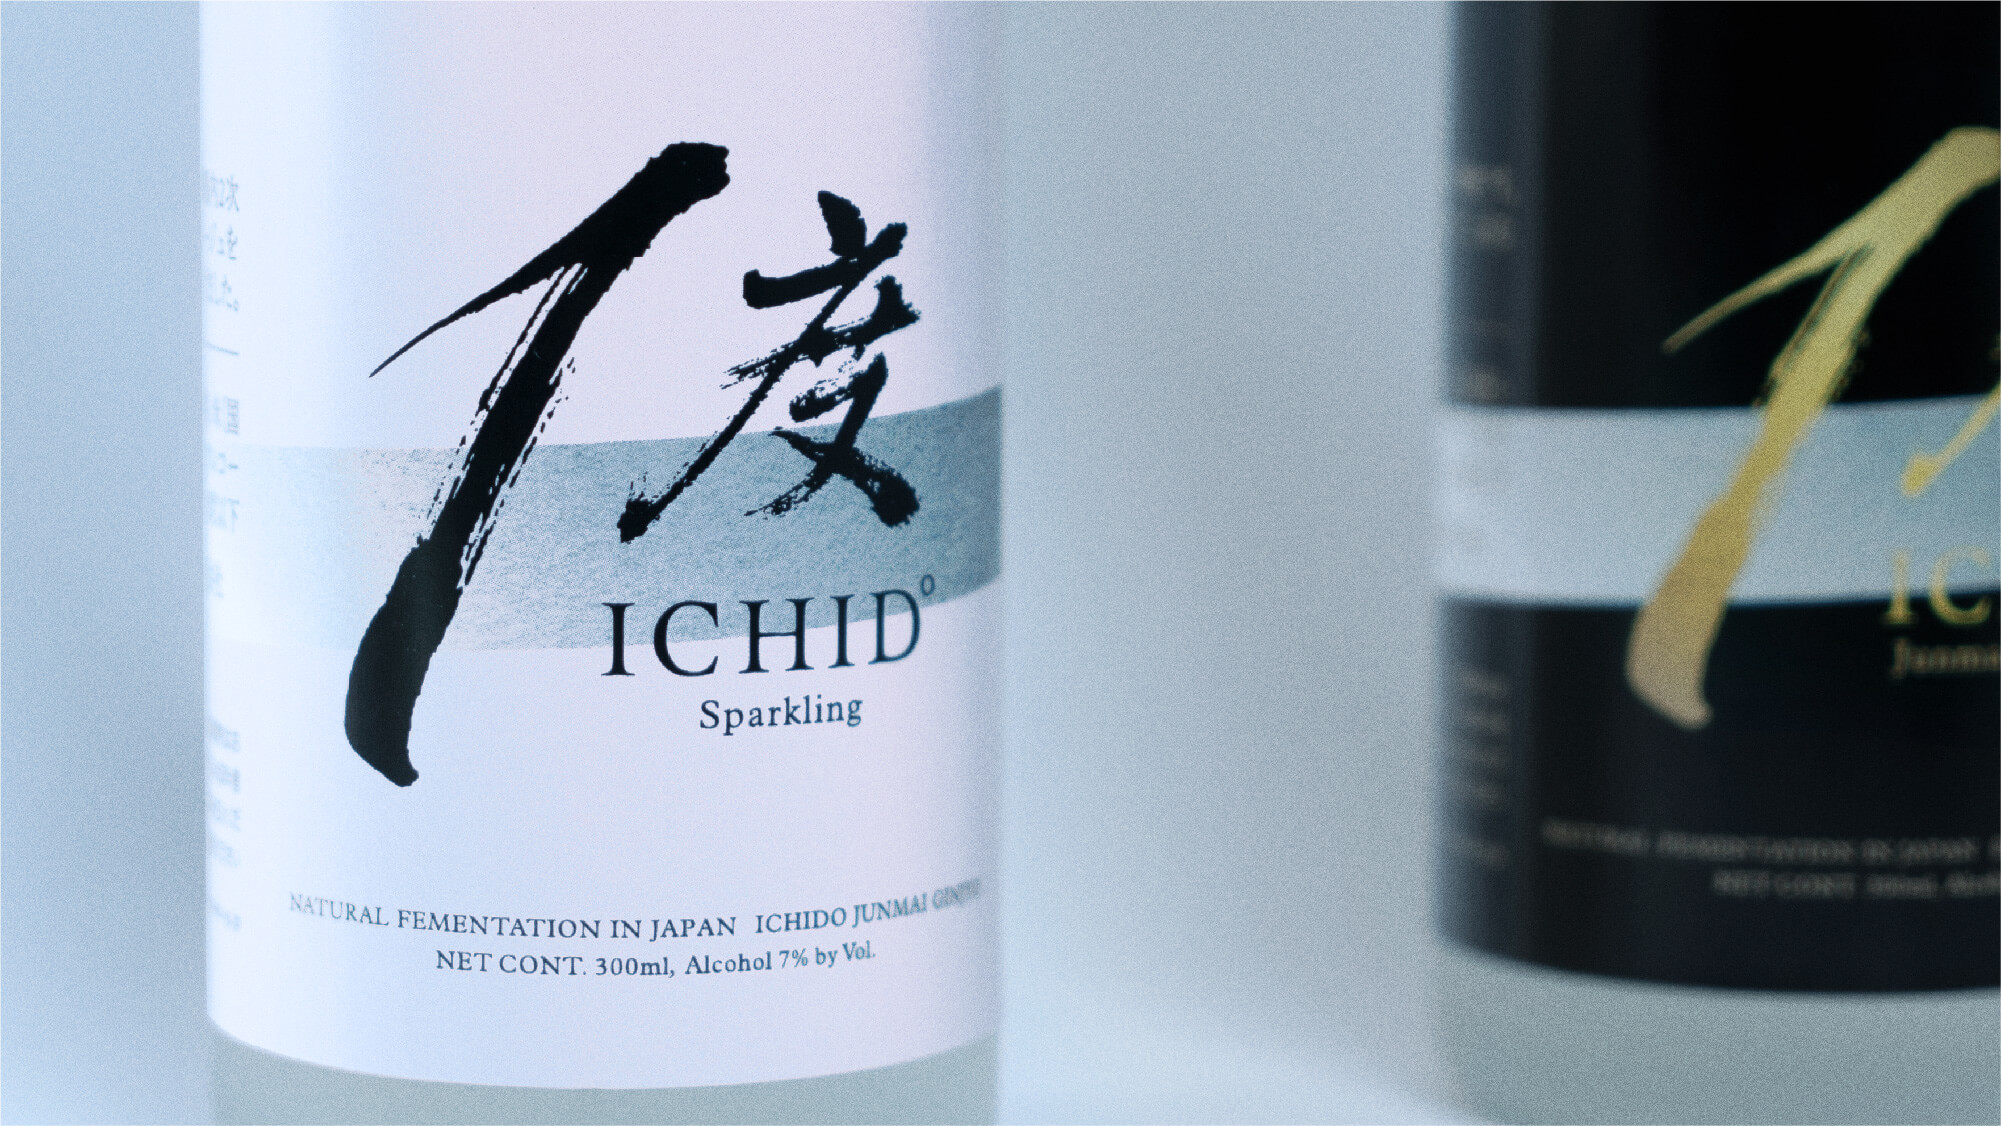 ICHIDO Product Brandingのサンプル画像です